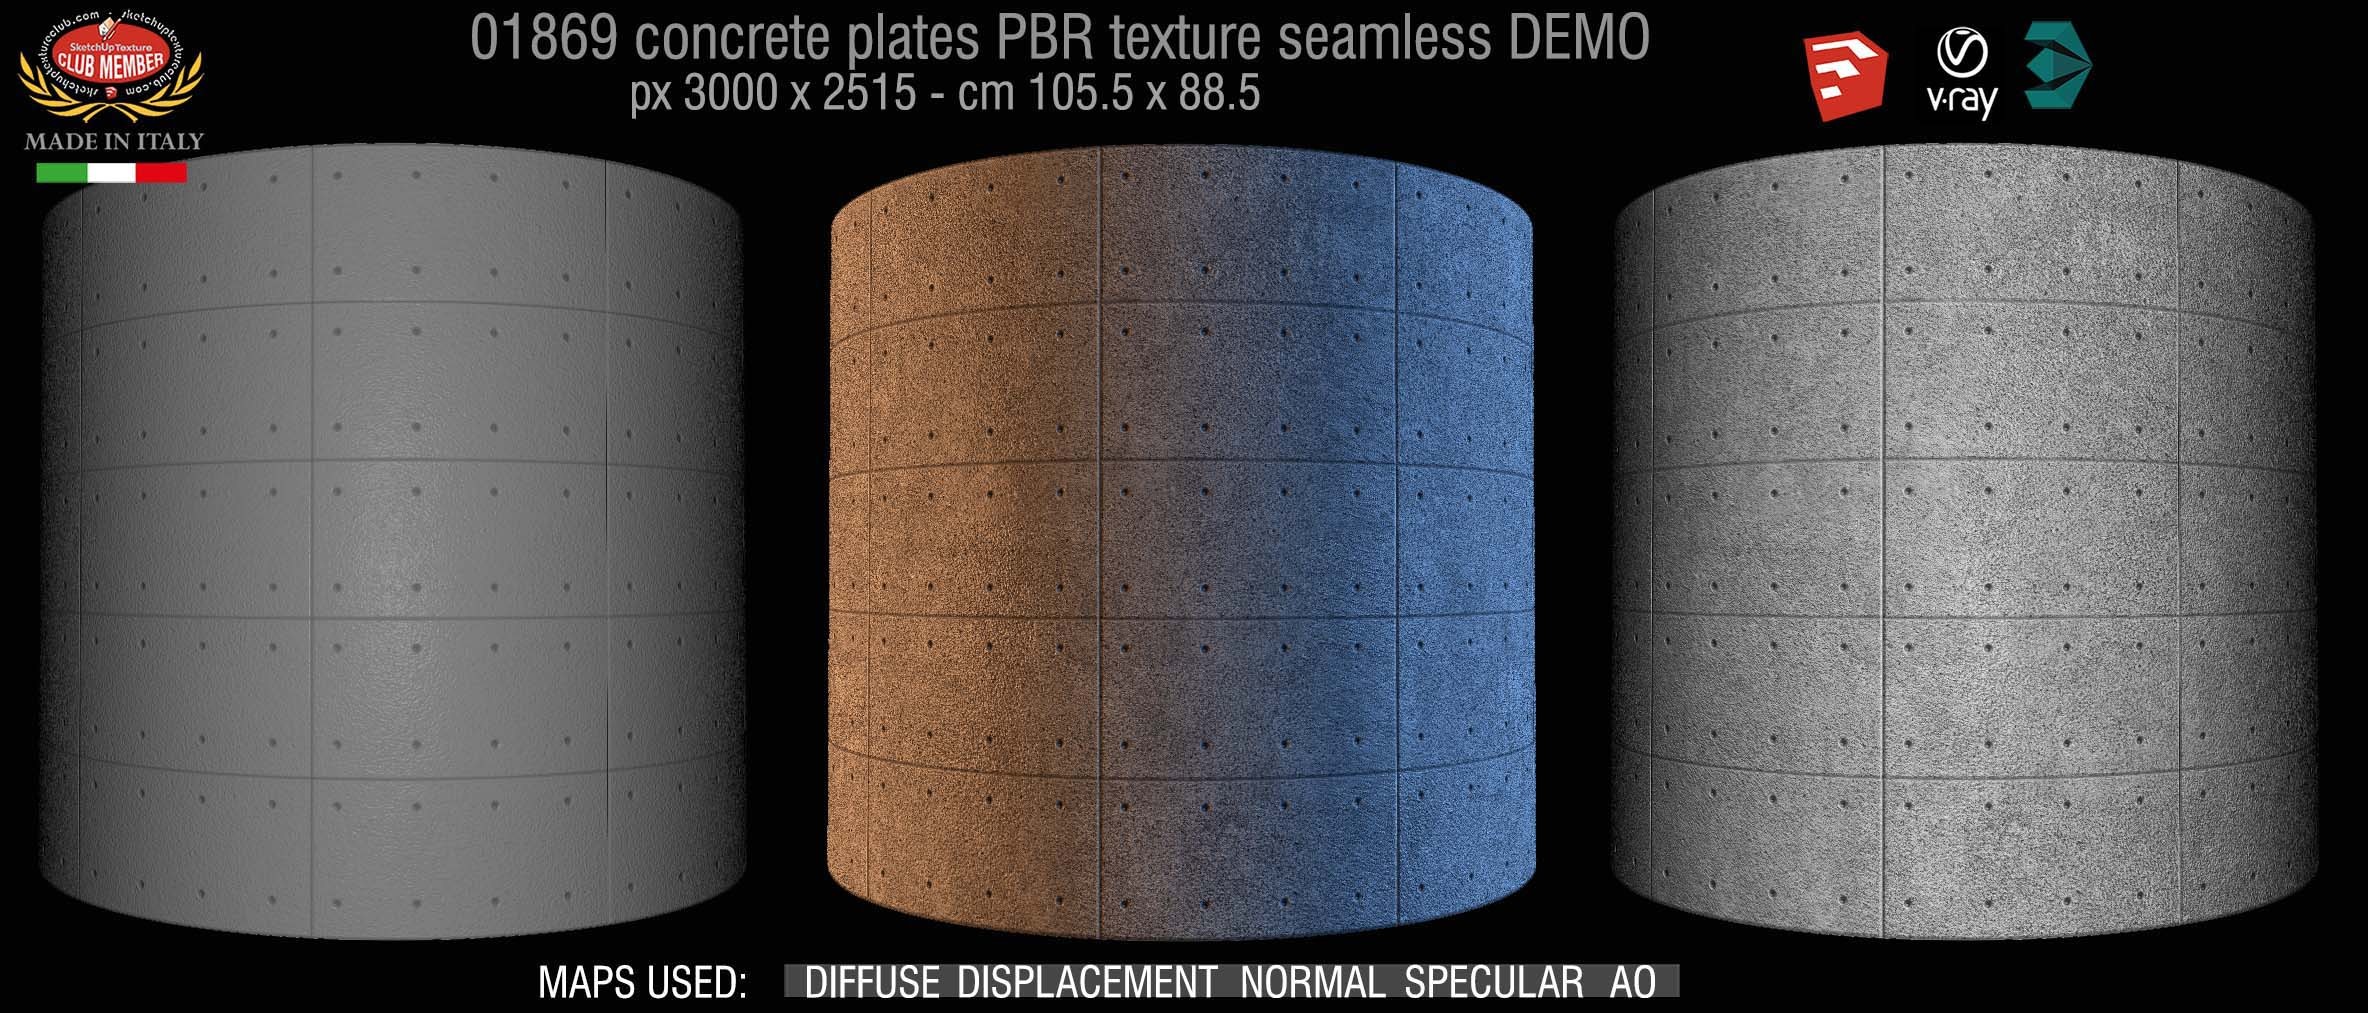 01869 Tadao Ando concrete plates PBR texture seamless DEMO